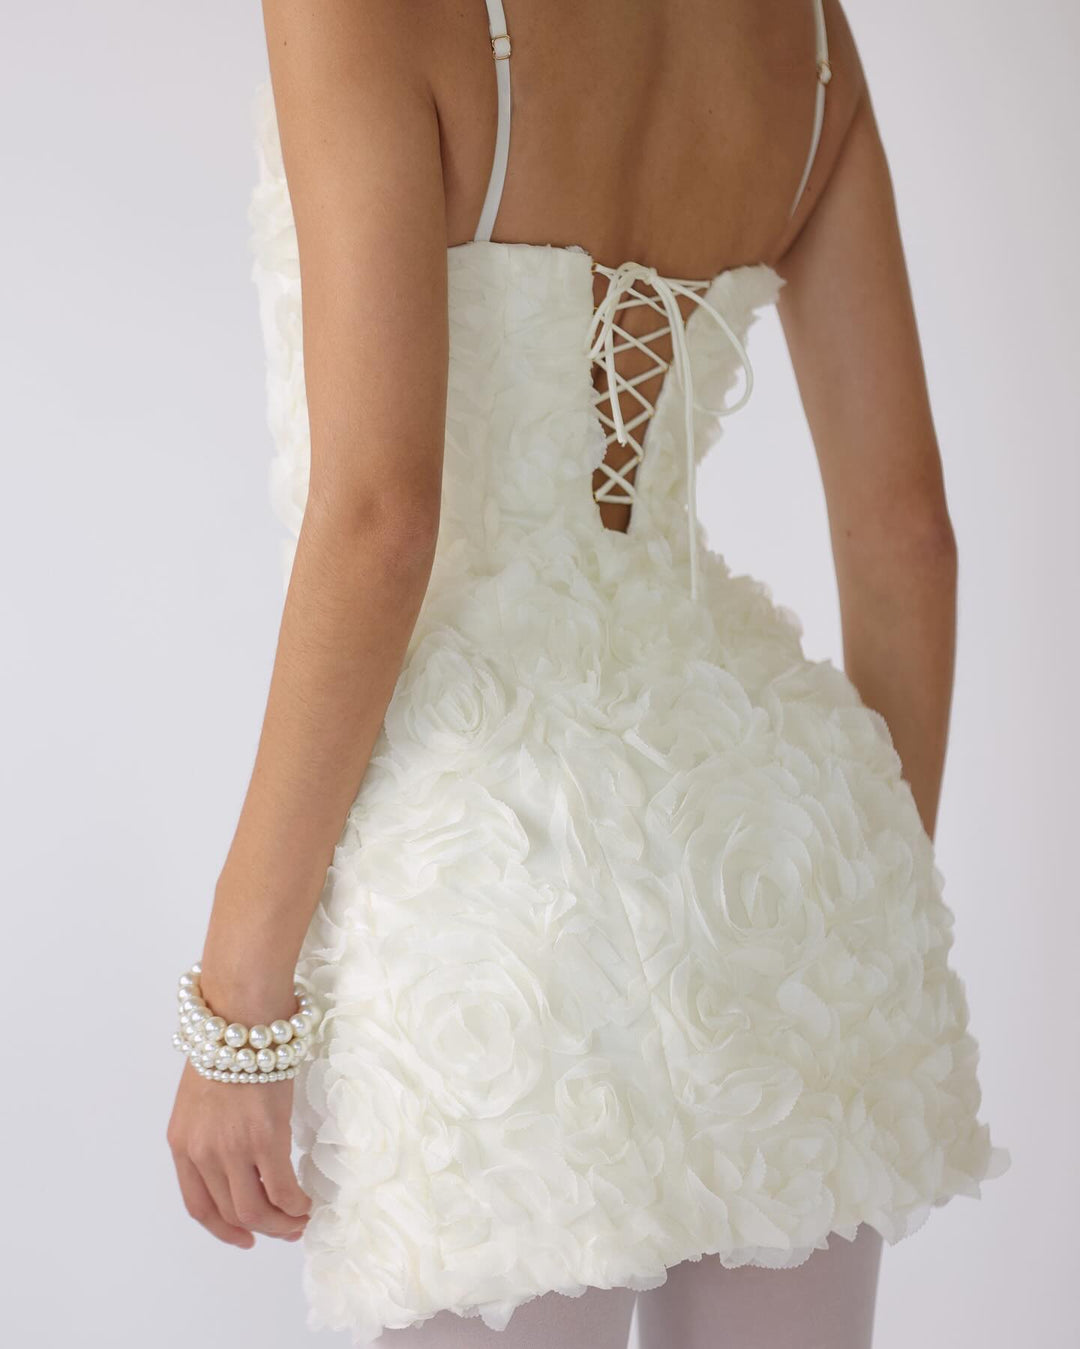 Mini-robe corset à appliqué floral, blanc